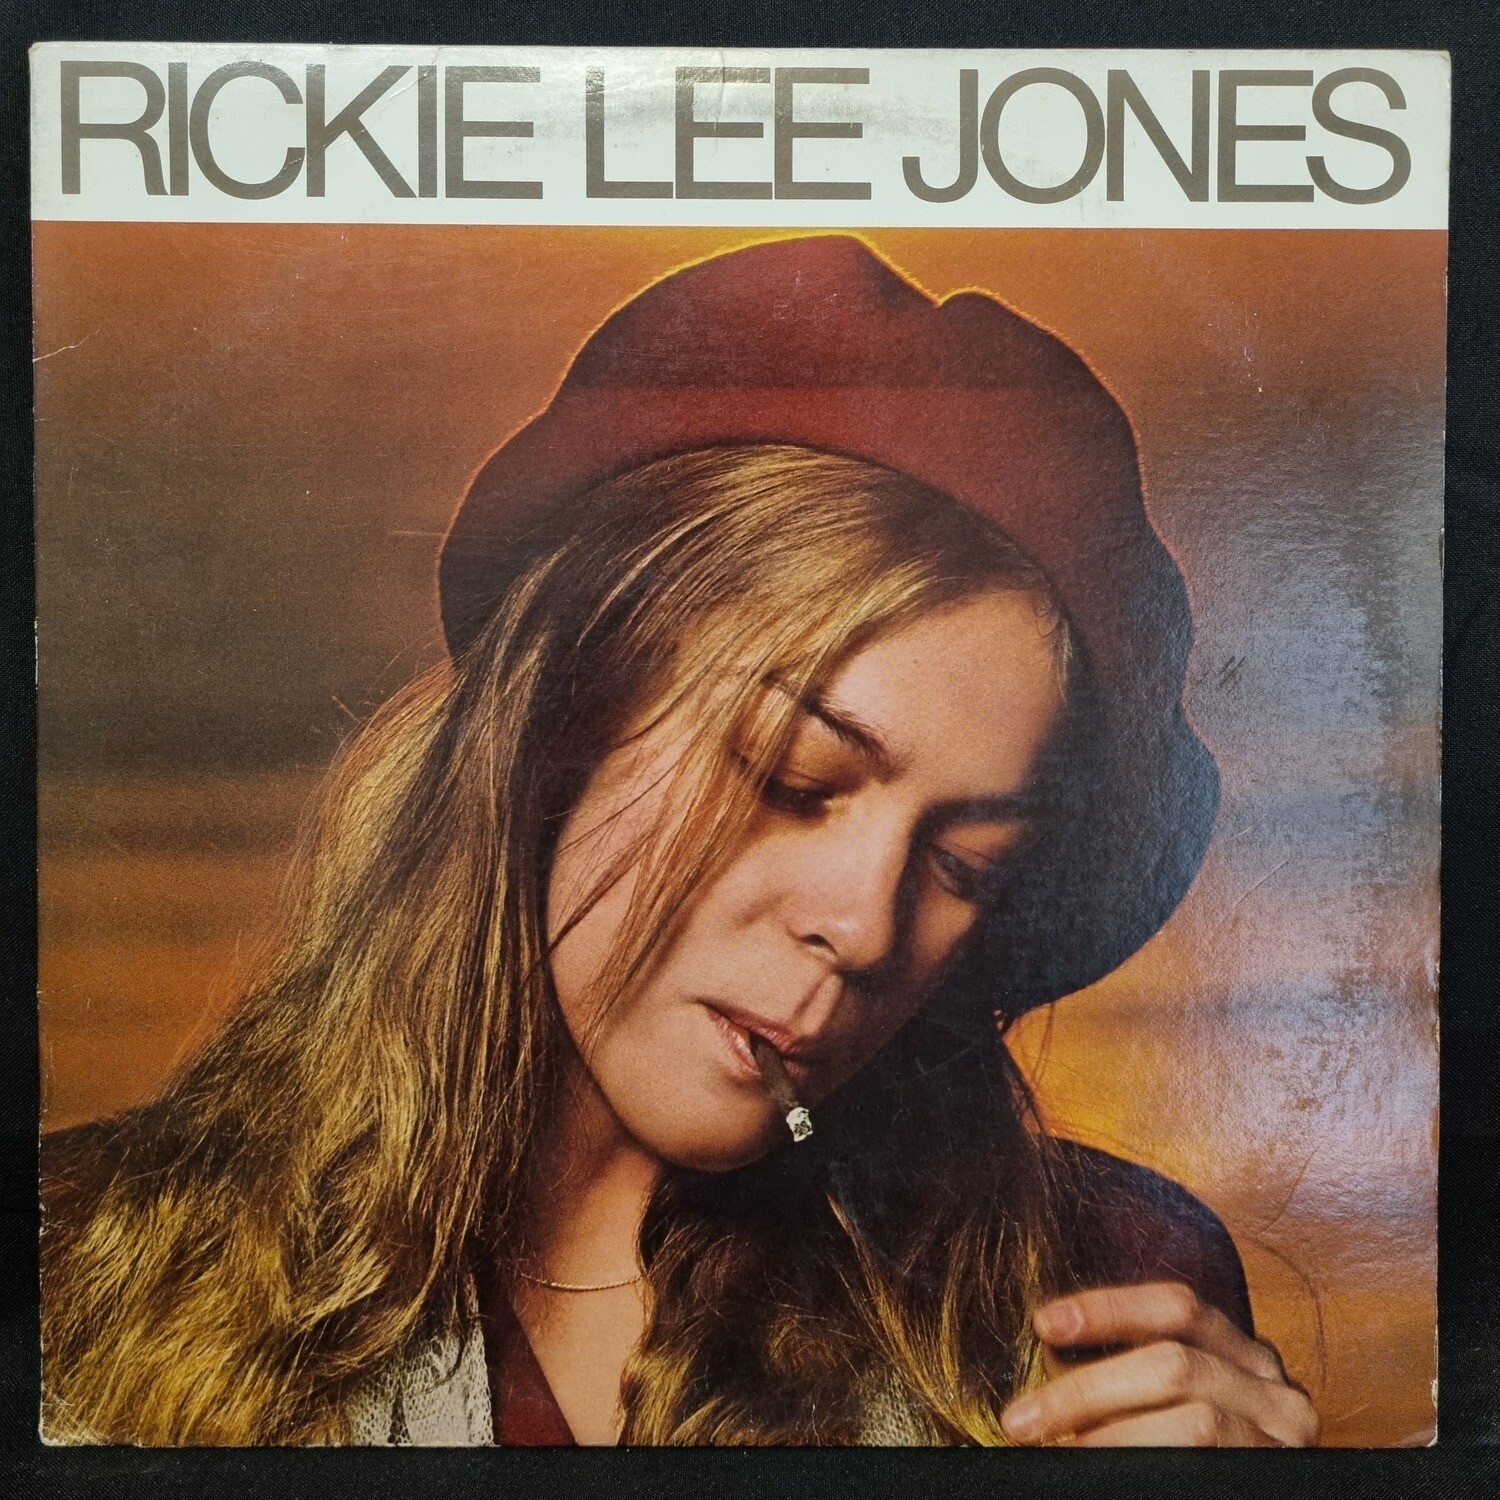 Rickie Lee Jones- Rickie Lee Jone